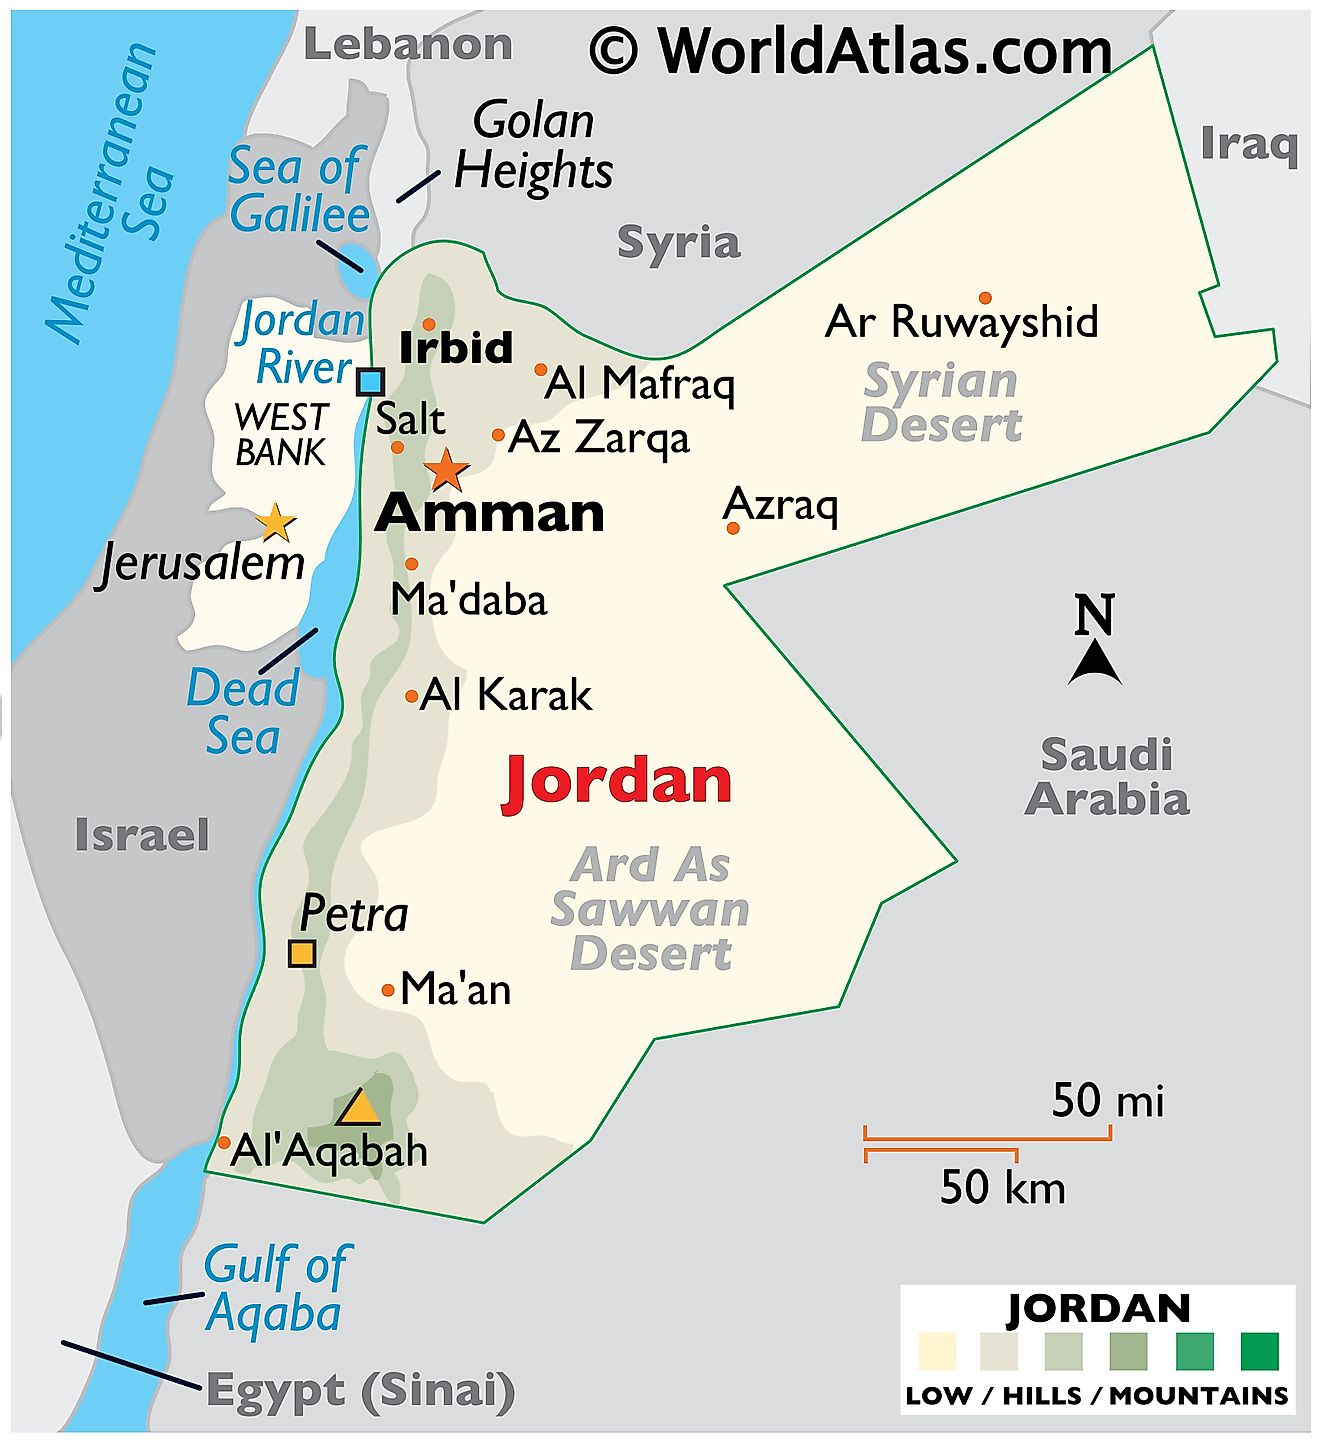 Mapa físico de Jordania que muestra el relieve, el punto más alto, el río Jordán, el mar Muerto, el desierto de Siria y el desierto de Ard As Sawwan.